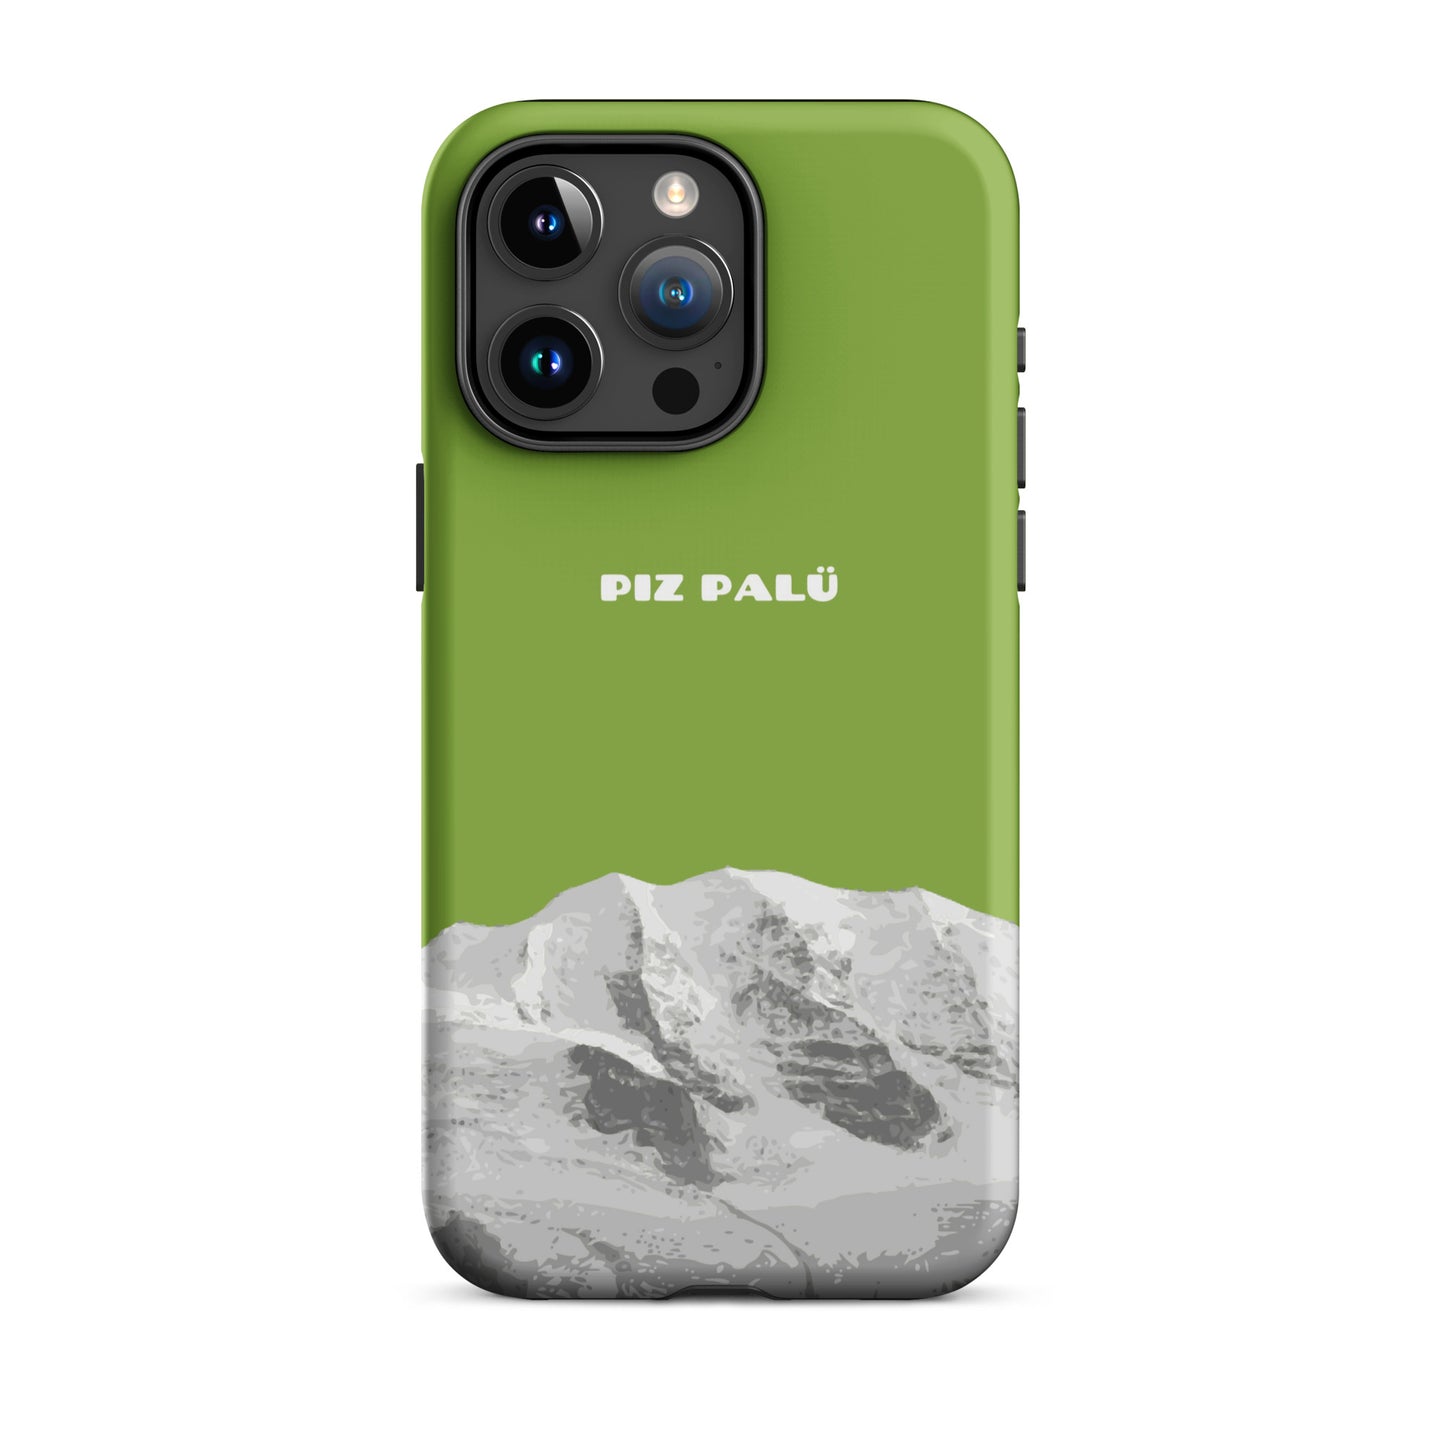 Hülle für das iPhone 15 Pro Max von Apple in der Farbe Gelbgrün, dass den Piz Palü in Graubünden zeigt. 